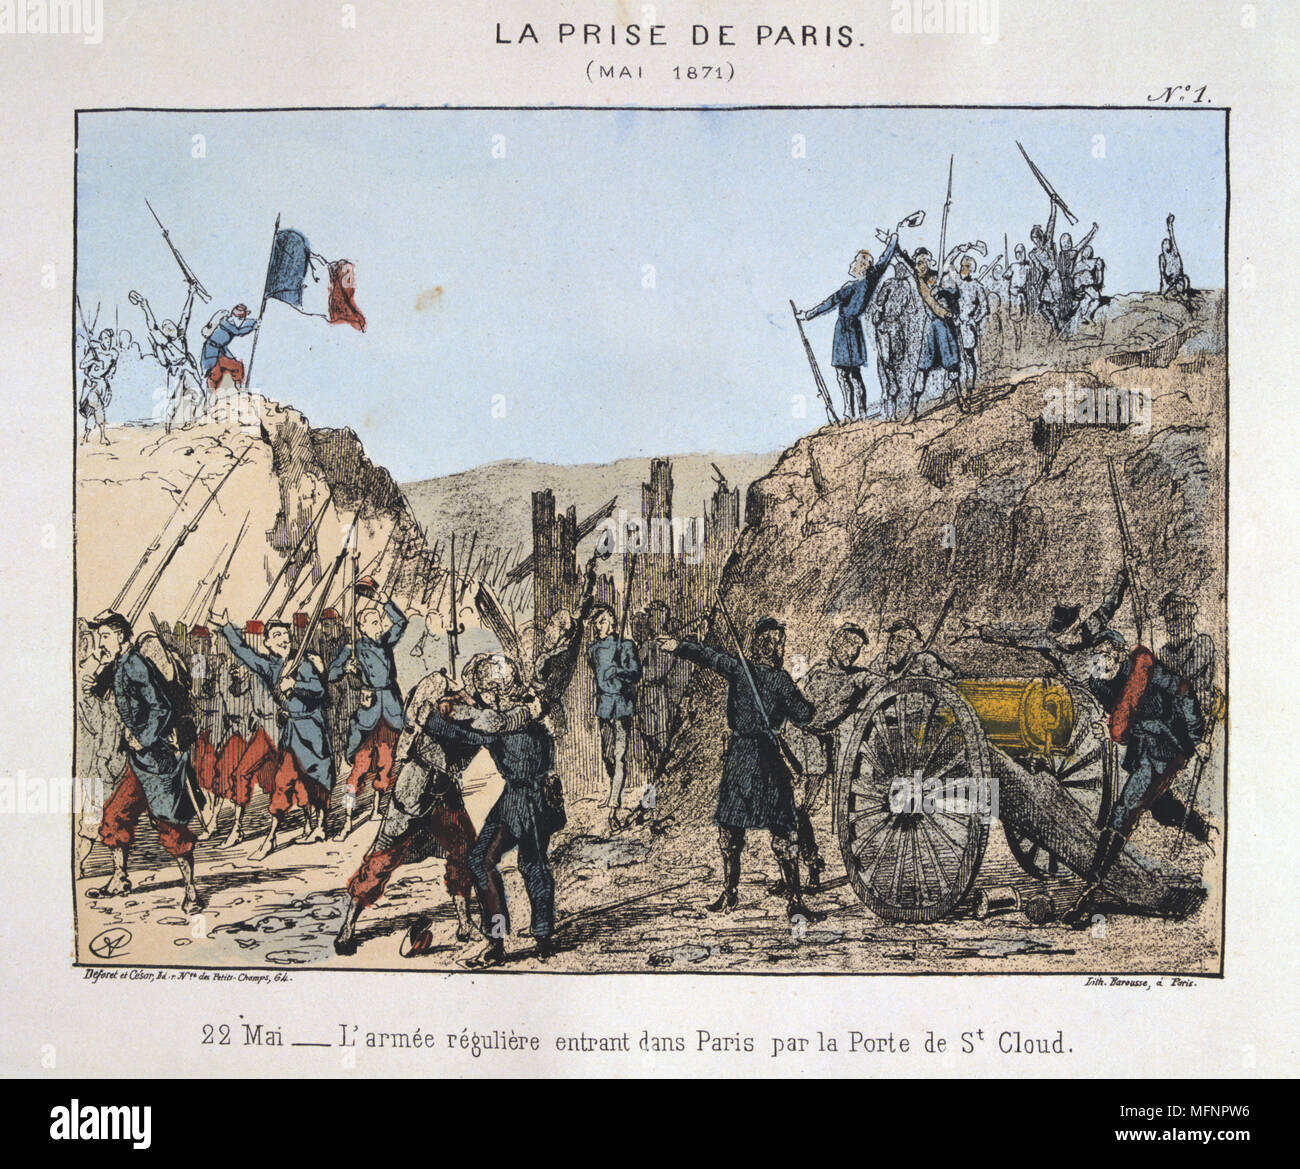 Comuna de París el 26 de marzo-28 de mayo de 1871. La semana sangrienta: tropas regulares del Gobierno, Versalles, entrando en París por la Porte de St Cloud, el 22 de mayo de 1871. Litografía coloreada. Foto de stock